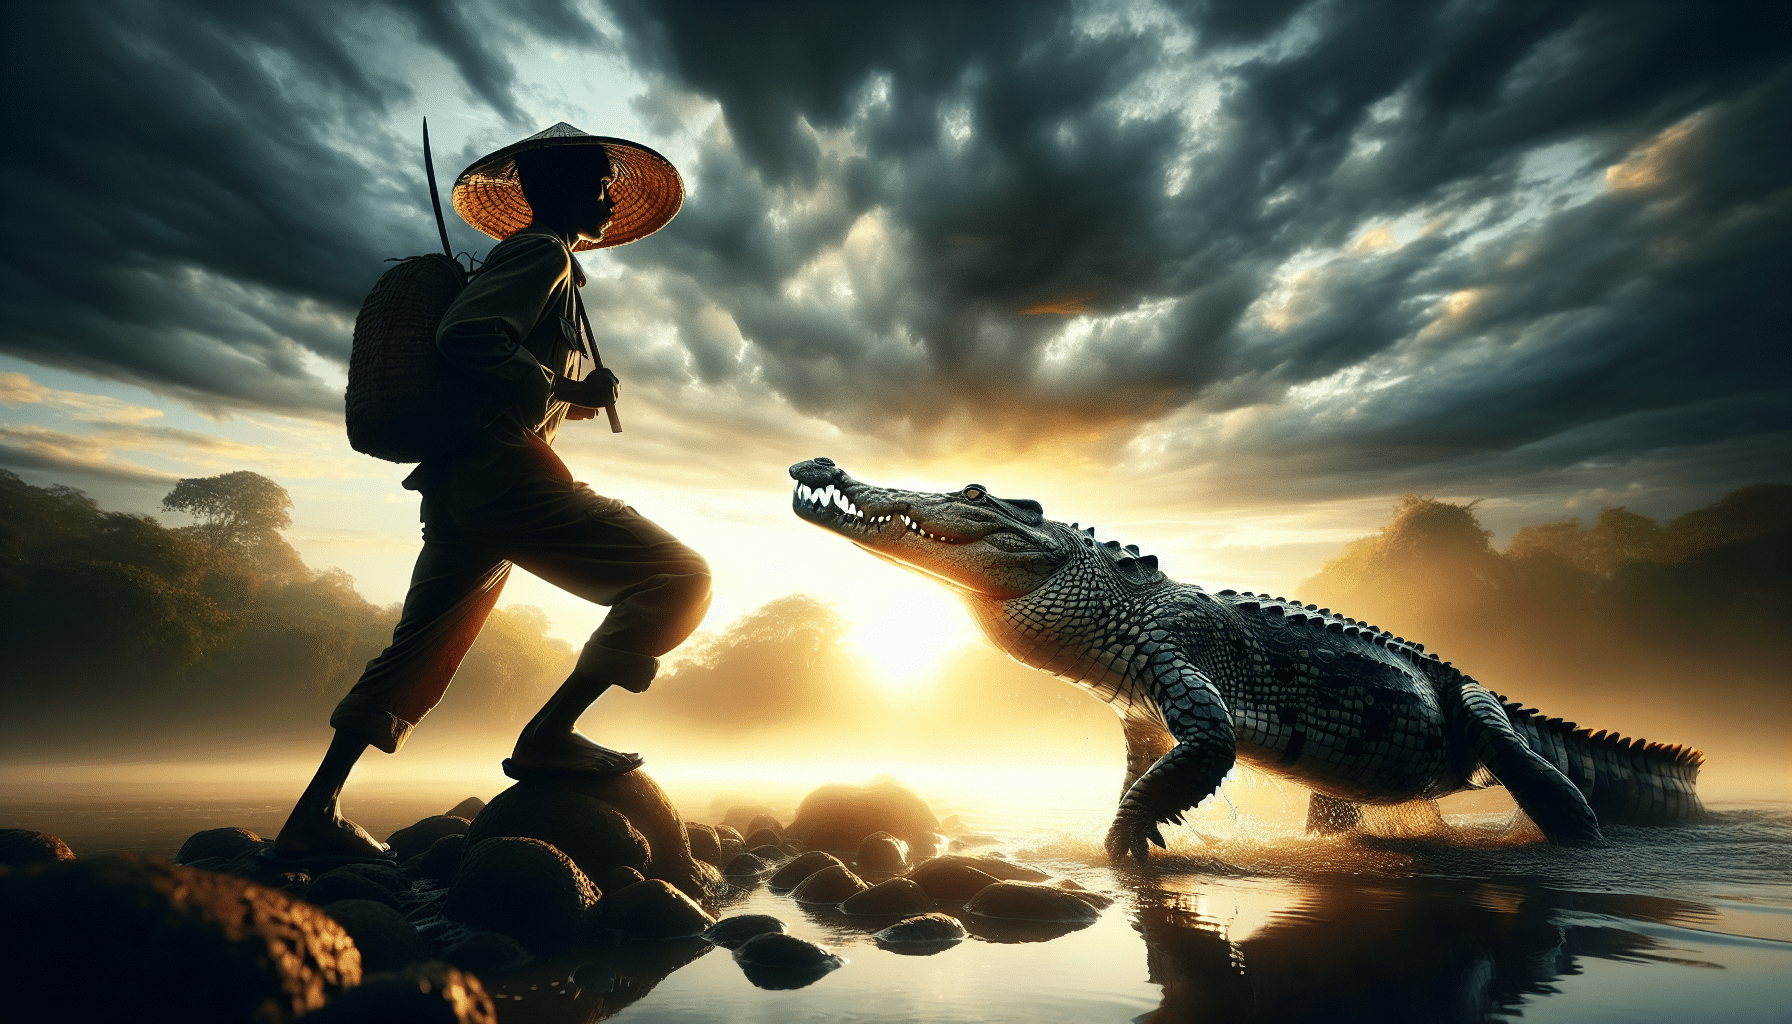 découvrez s'il est possible de rêver de tuer un crocodile et explorez les significations associées à ce type de rêve.